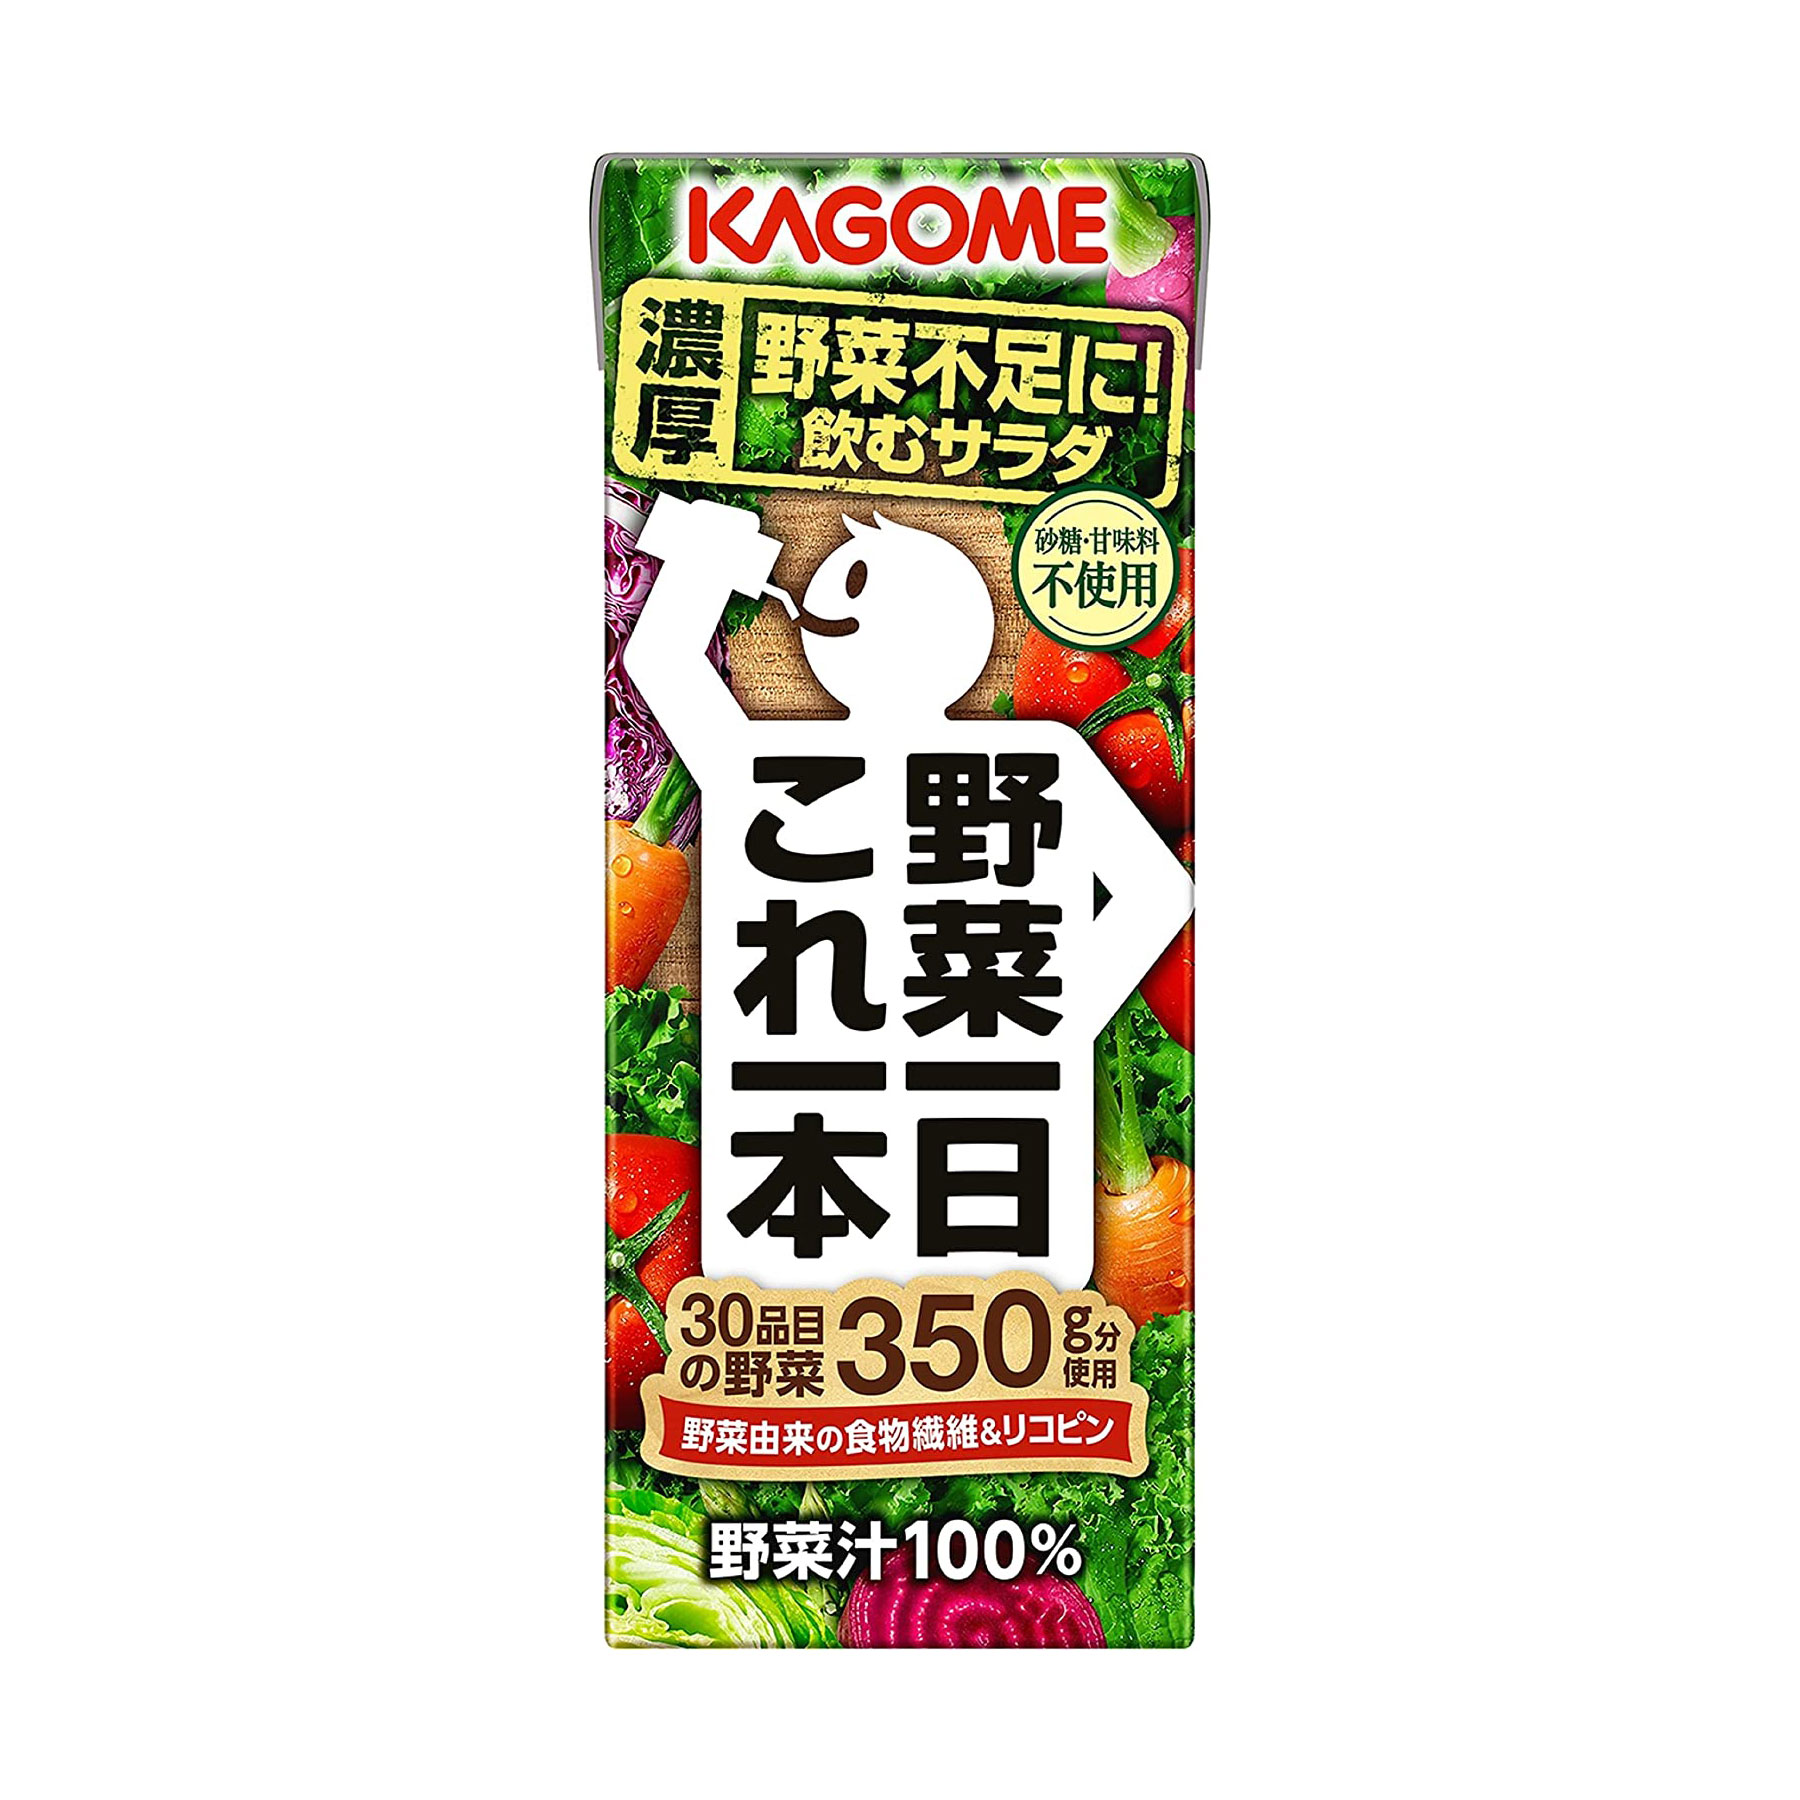 921円 激安単価で 紙パック 野菜ジュース 機能性表示食品 カゴメ あまいトマト GABA リラックス 195ml 1箱 24本入